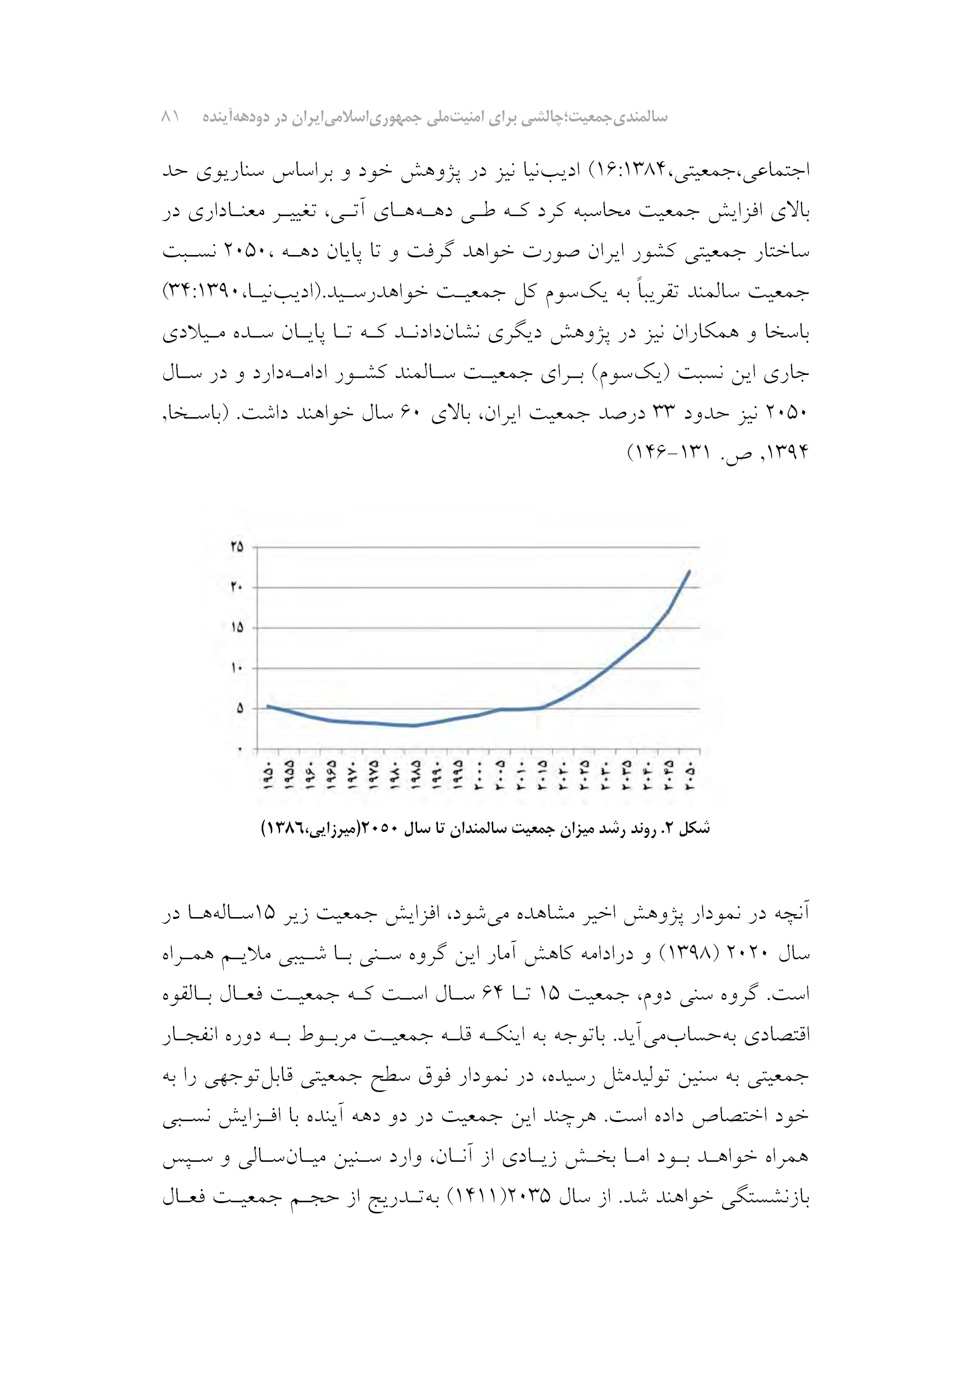 سالمندی جمعیت؛ چالشی برای امنیت ملی جمهوری اسلامی ایران در دو دهه آینده